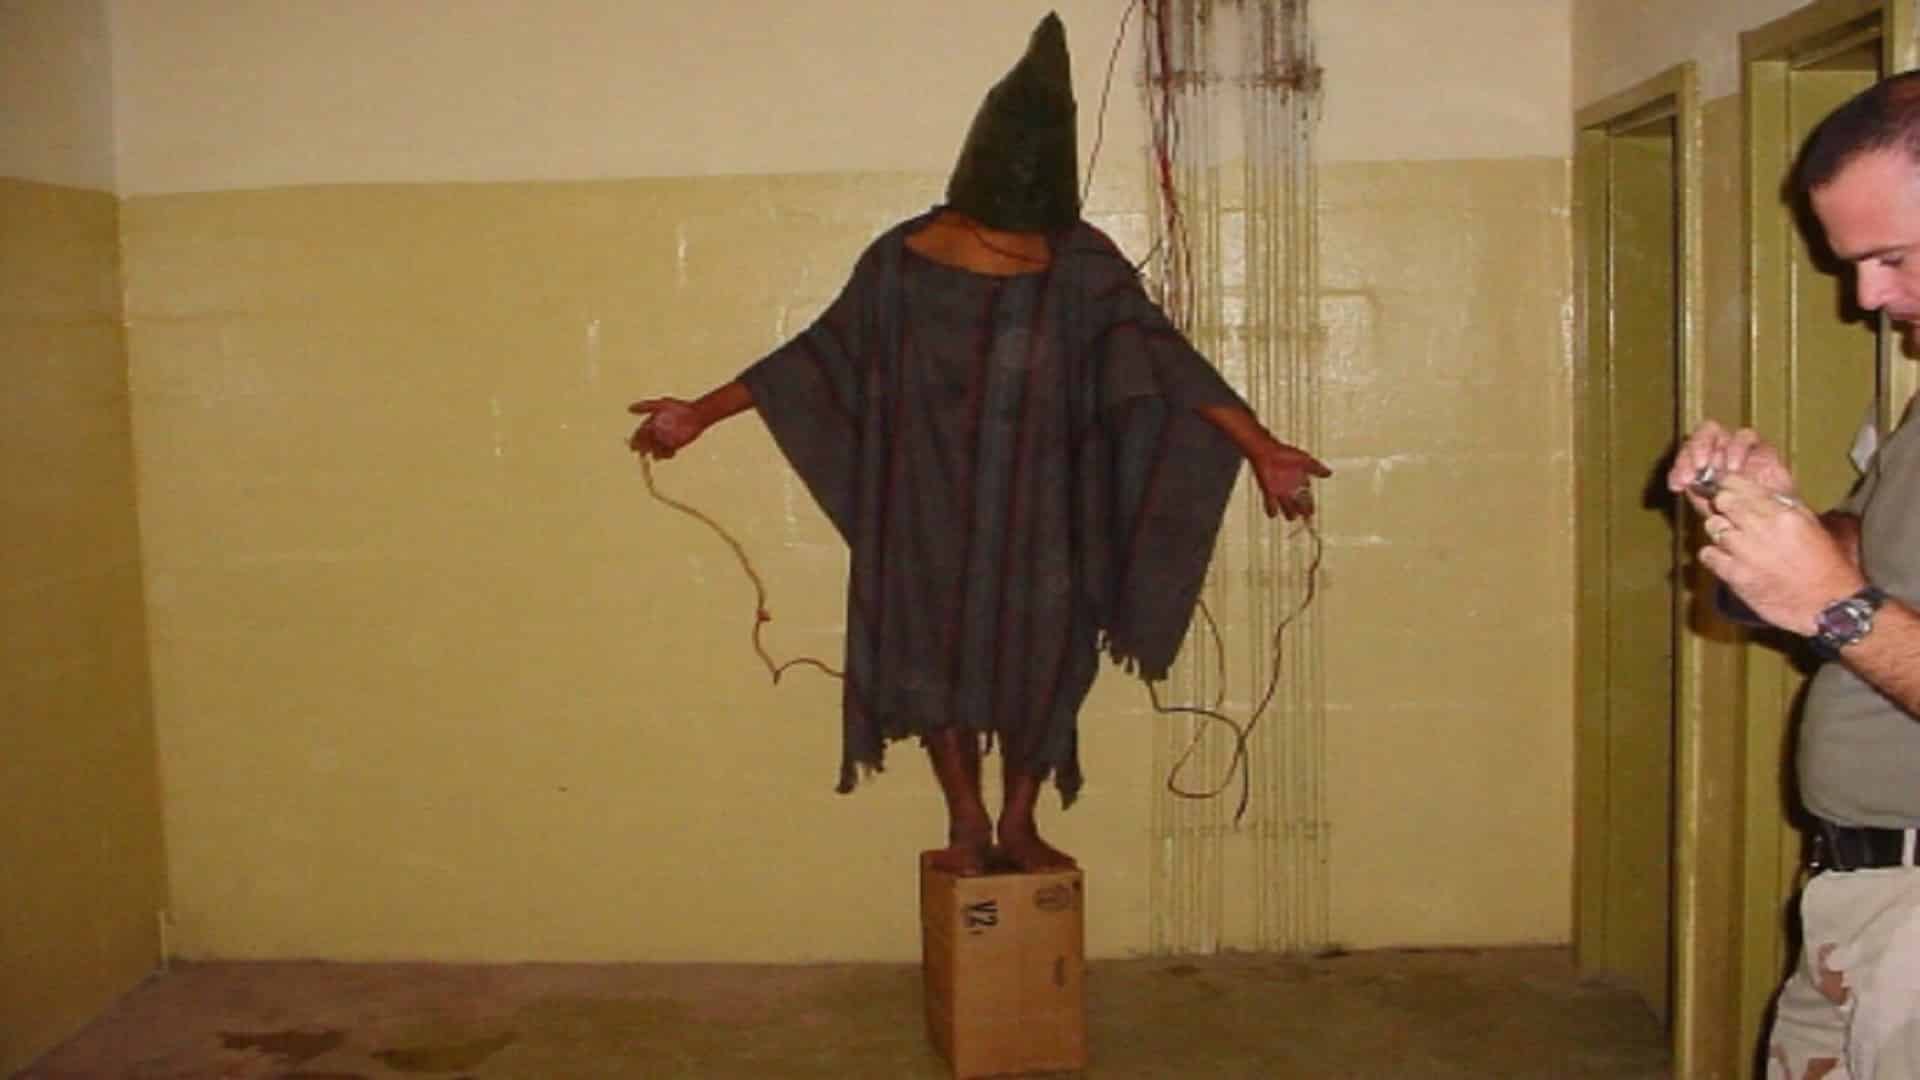 إحدى الصور التي انتشرت من سجن أبو غريب يظهر فيه تعذيب المعتقلين بصعقهم كهربائياً